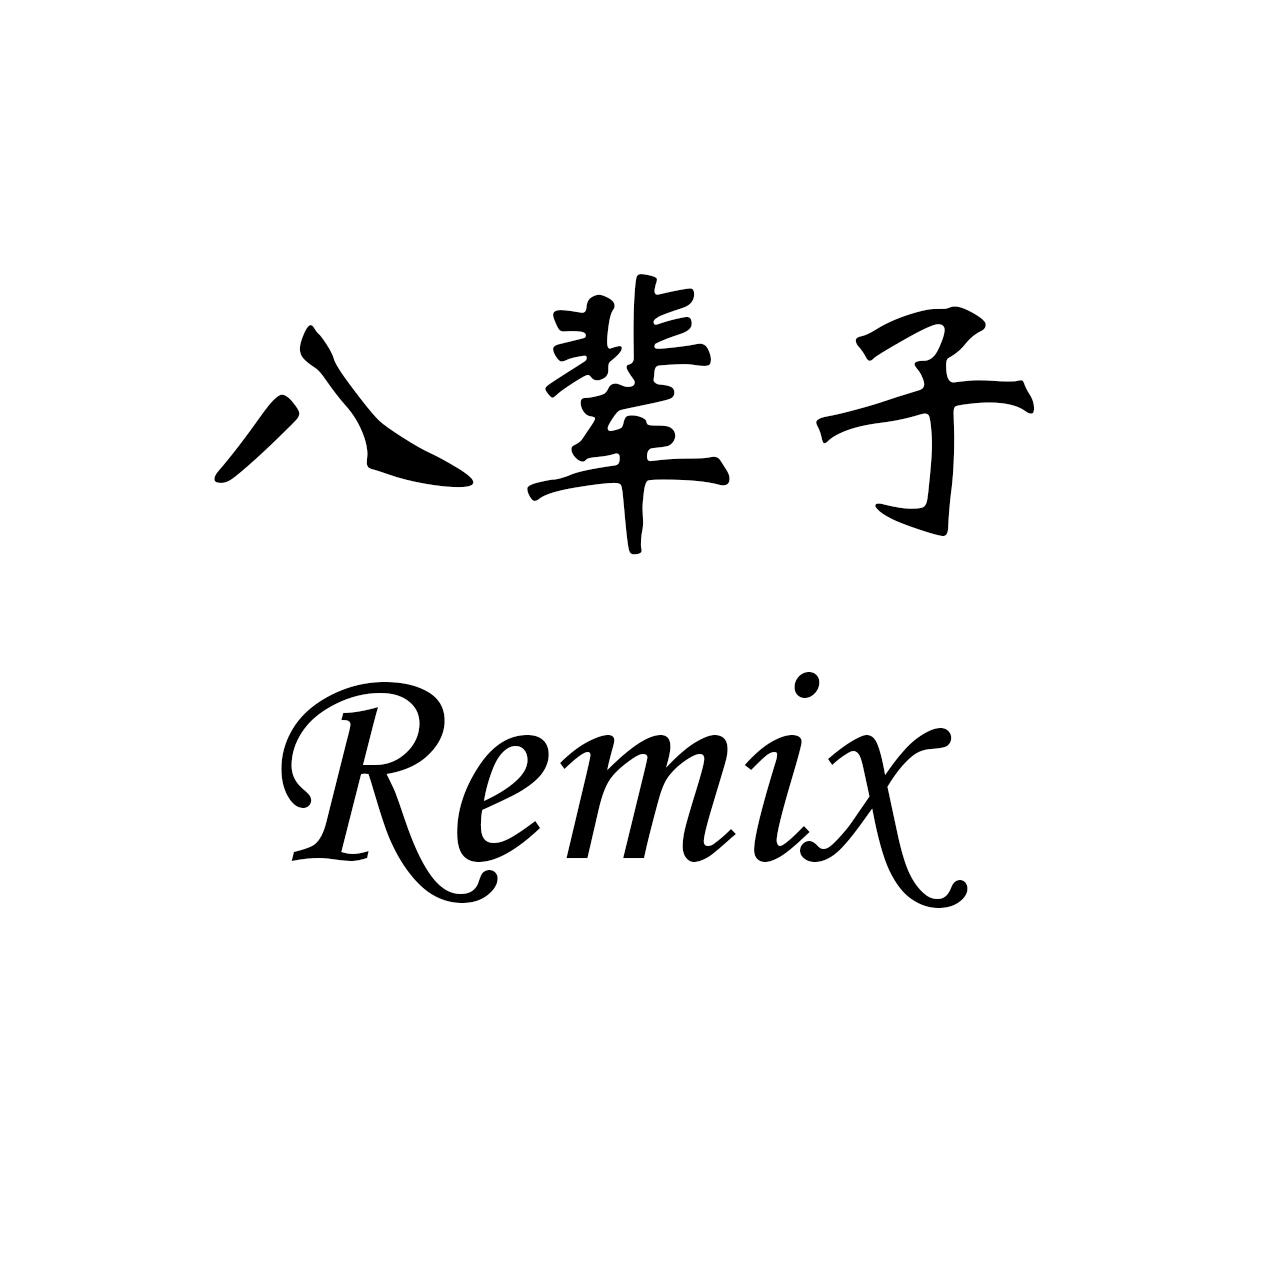 洛天依 - 八辈子remix (伴奏) - 端木 - 单曲 - 网易